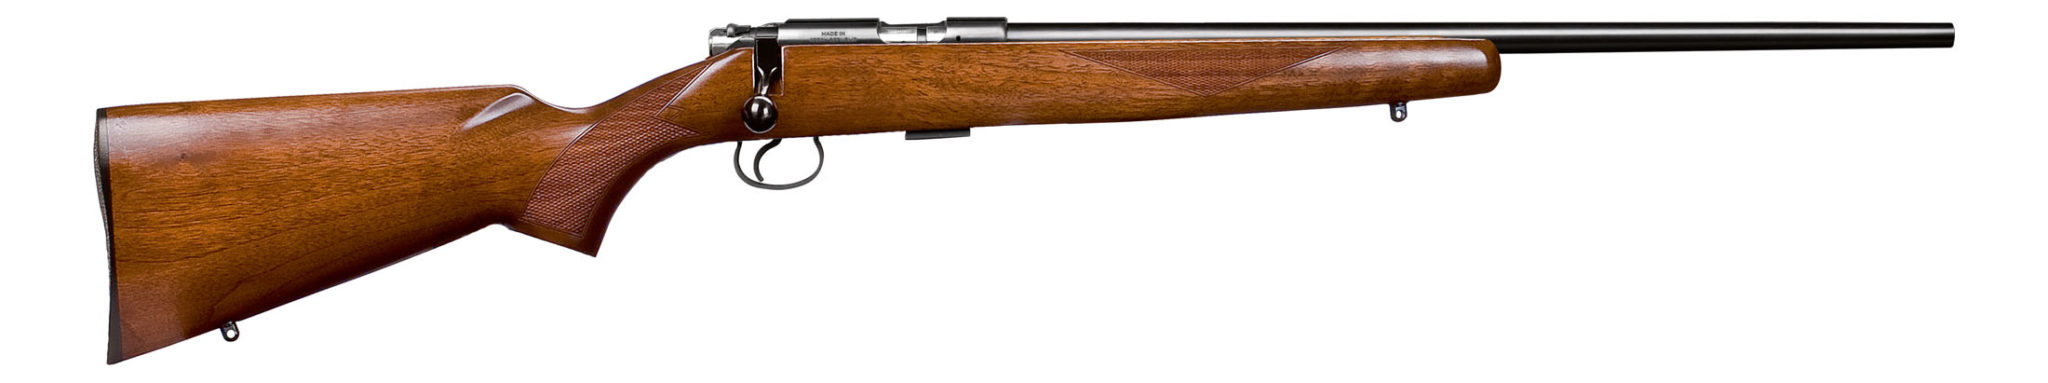 Best 22 Magnum Rifles On The Market Gunhub